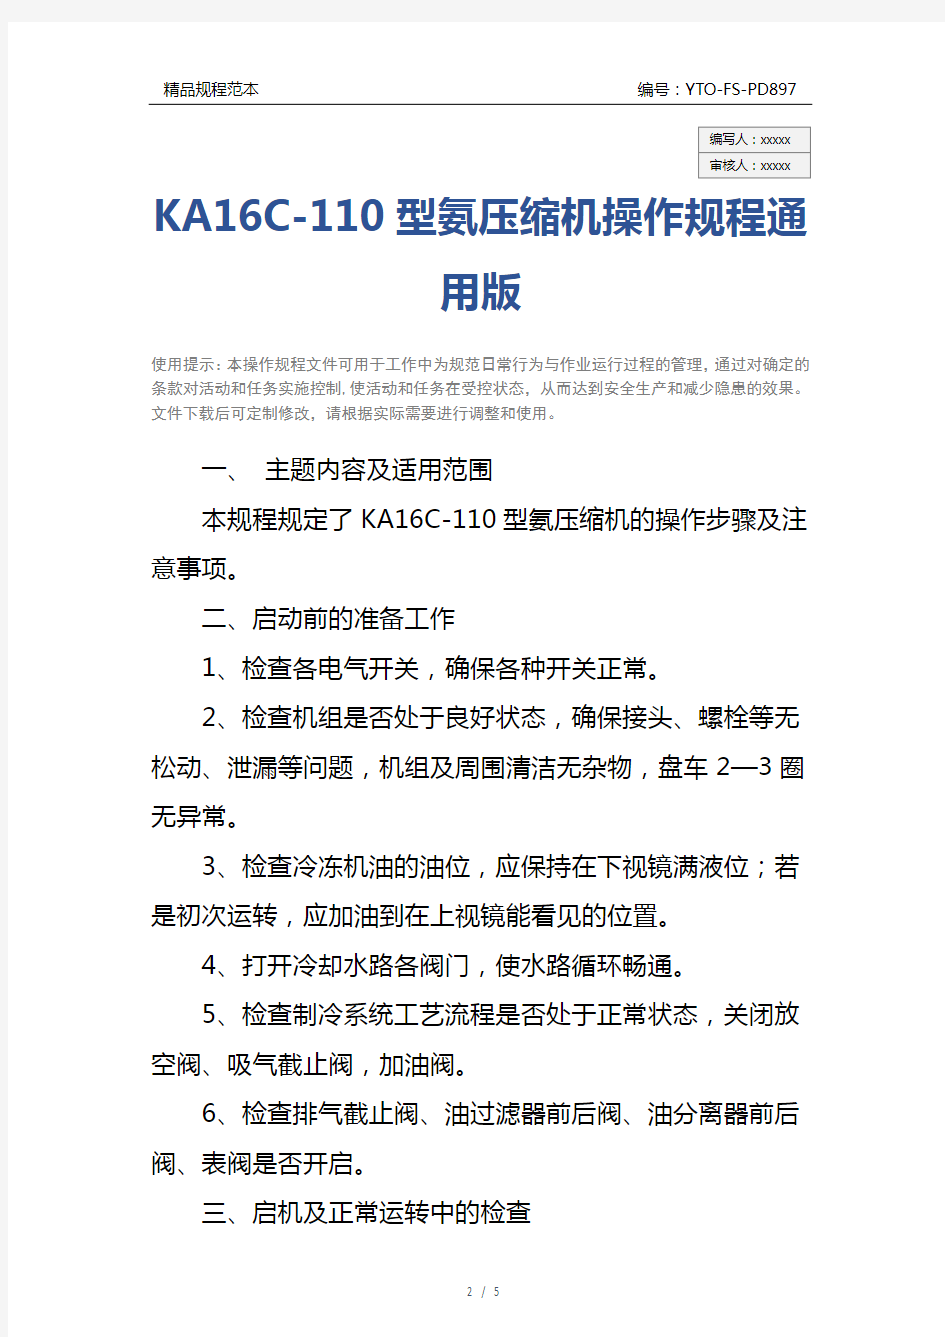 KA16C-110型氨压缩机操作规程通用版